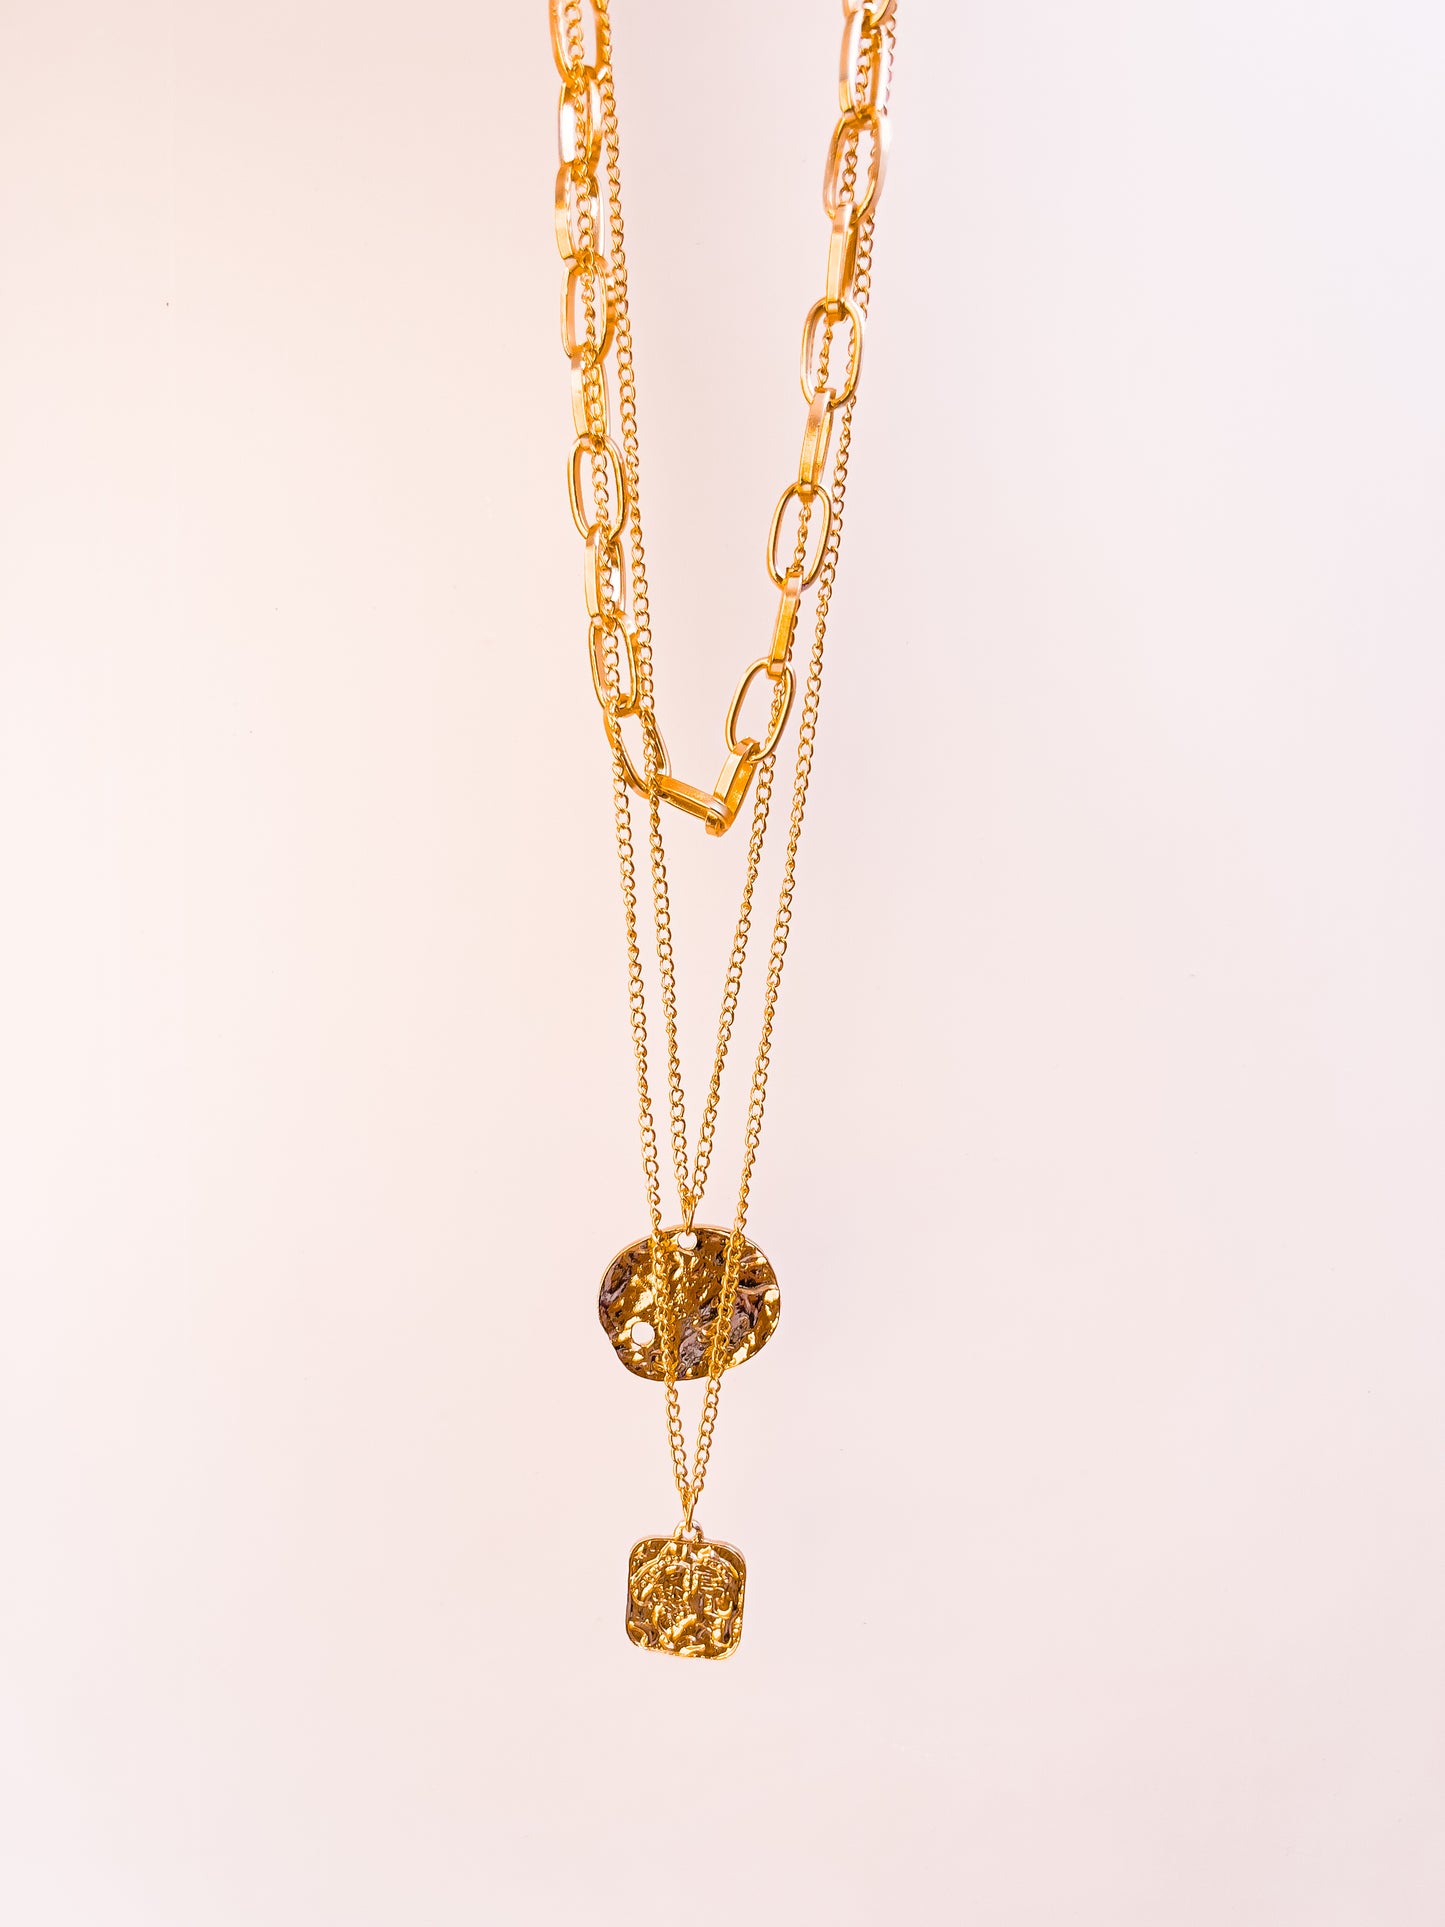 Boho Gold Necklace